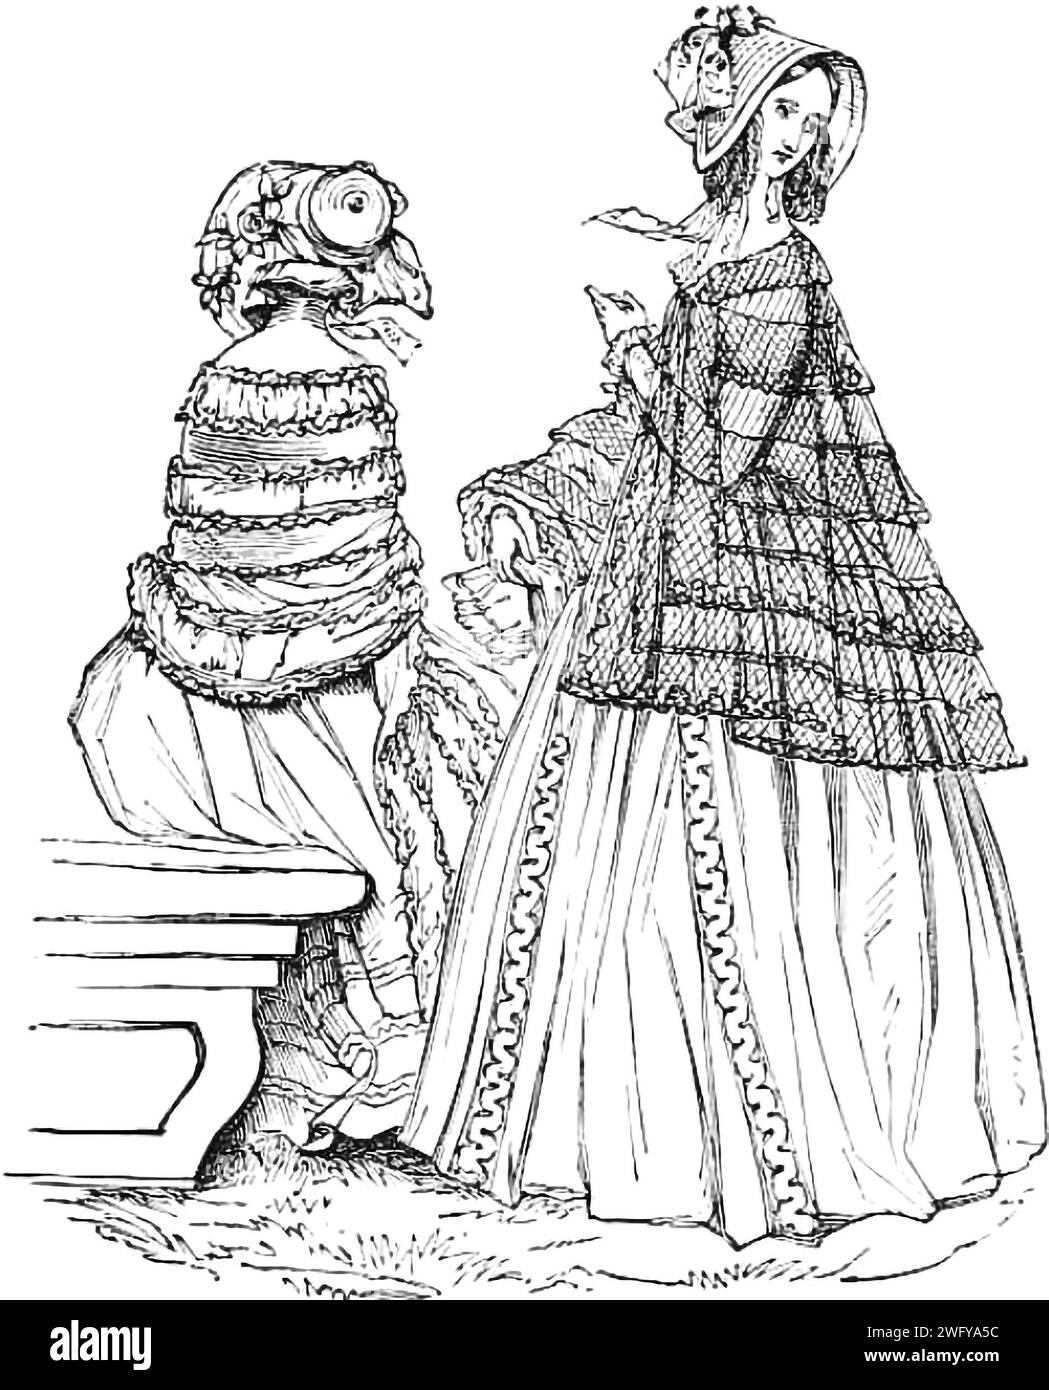 Dessin intitulé « Fashion for May » tiré de « Illustrated London News », 14 mai 1842. Il s'agit du premier magazine d'information hebdomadaire illustré au monde. Banque D'Images